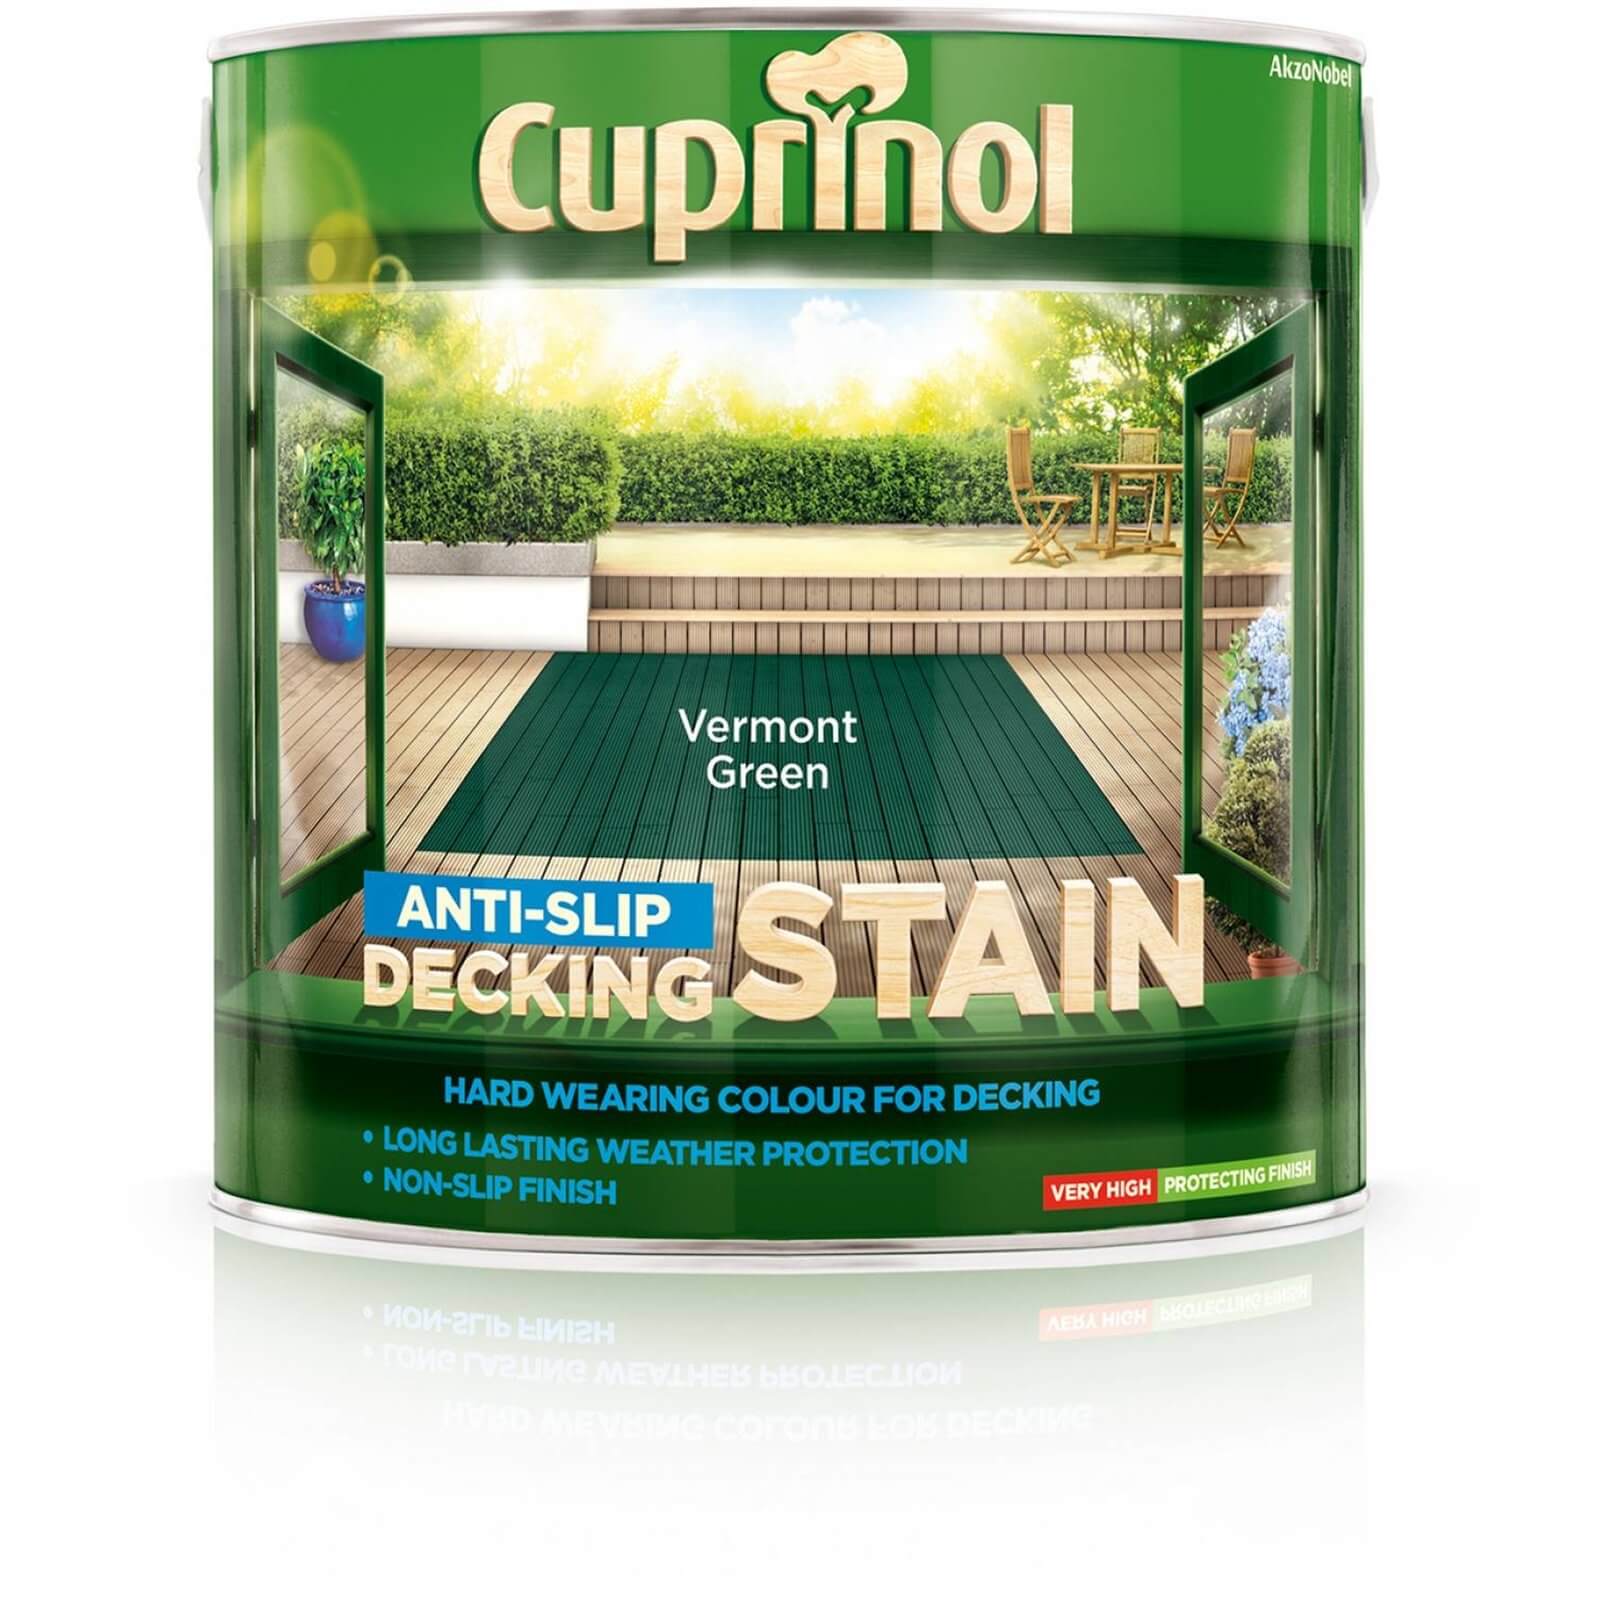 Cuprinol Anti-Slip Decking Stain Vermont Green - 2.5L